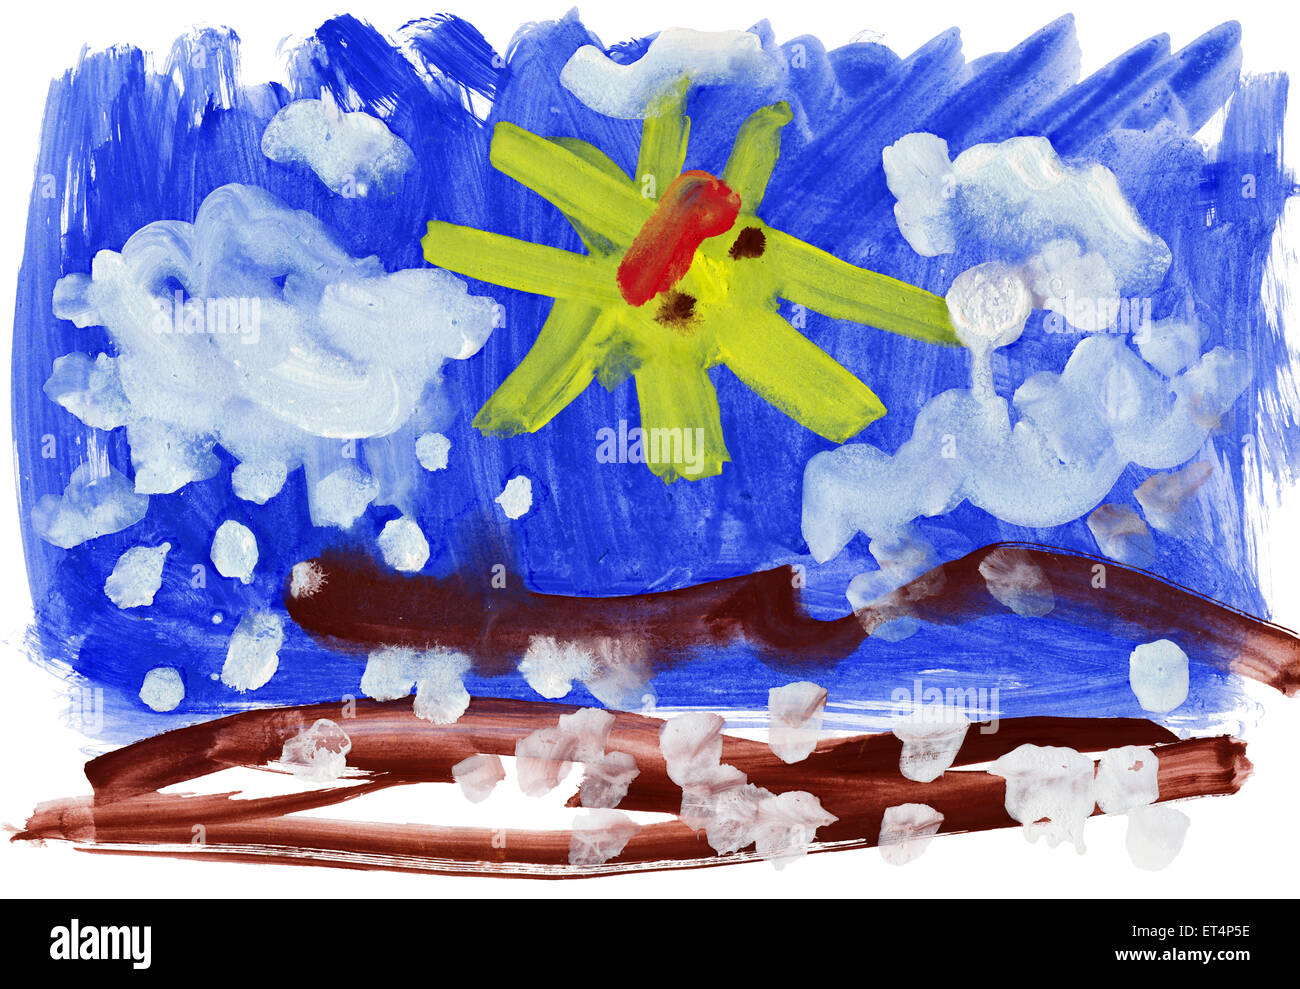 Dessin d'enfant à l'aquarelle. Paysage avec neige et soleil Banque D'Images